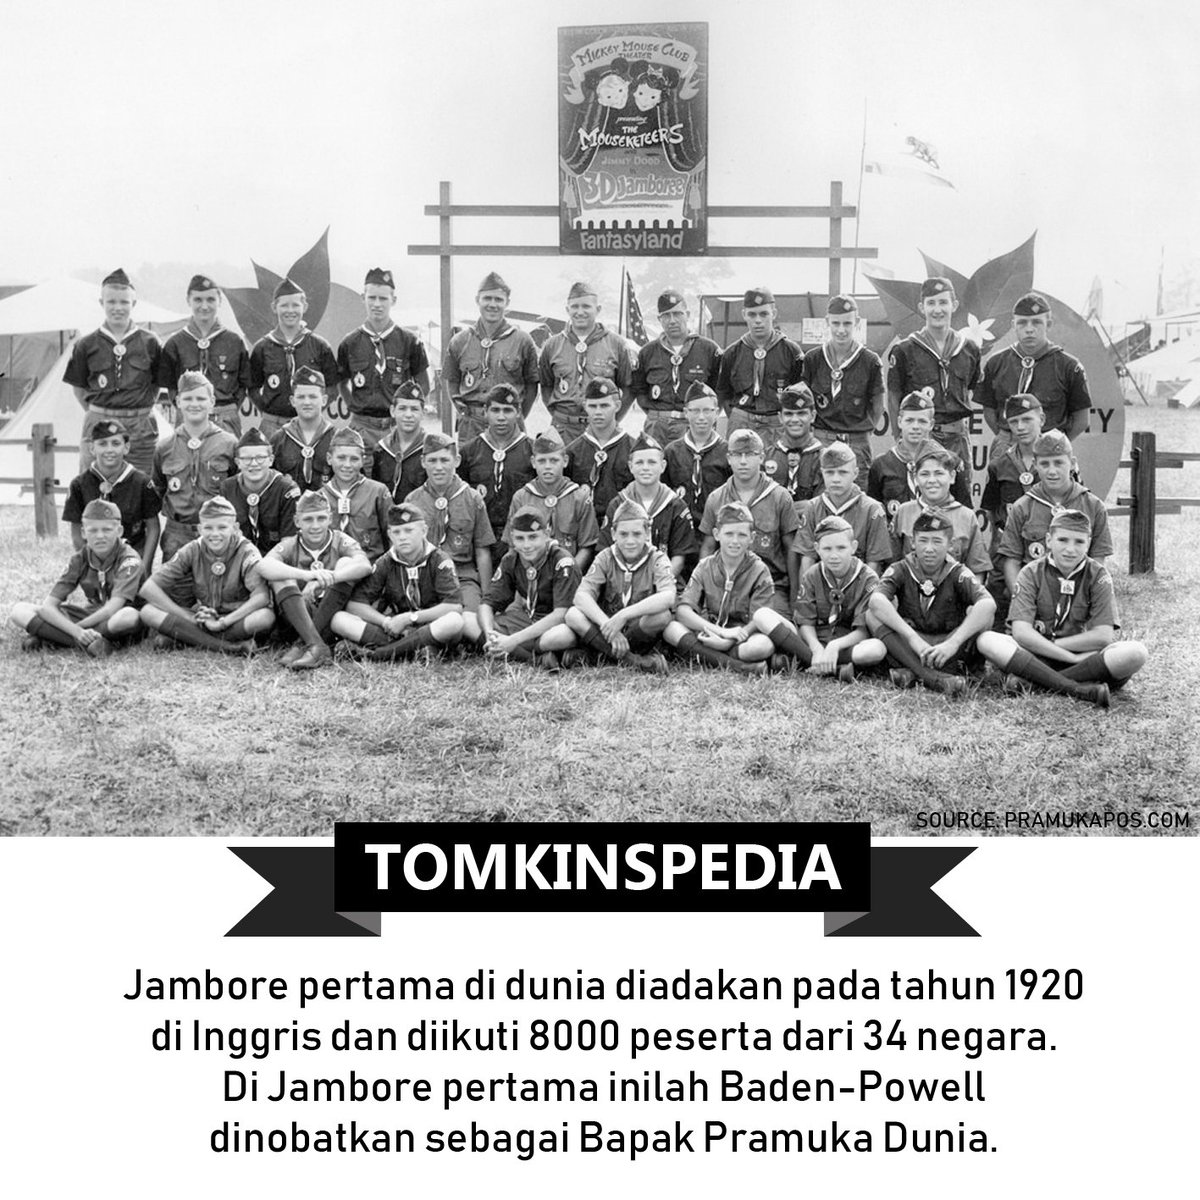 TOMKINS Indonesia בטוויטר: "Jambore pertama di dunia diadakan di ...